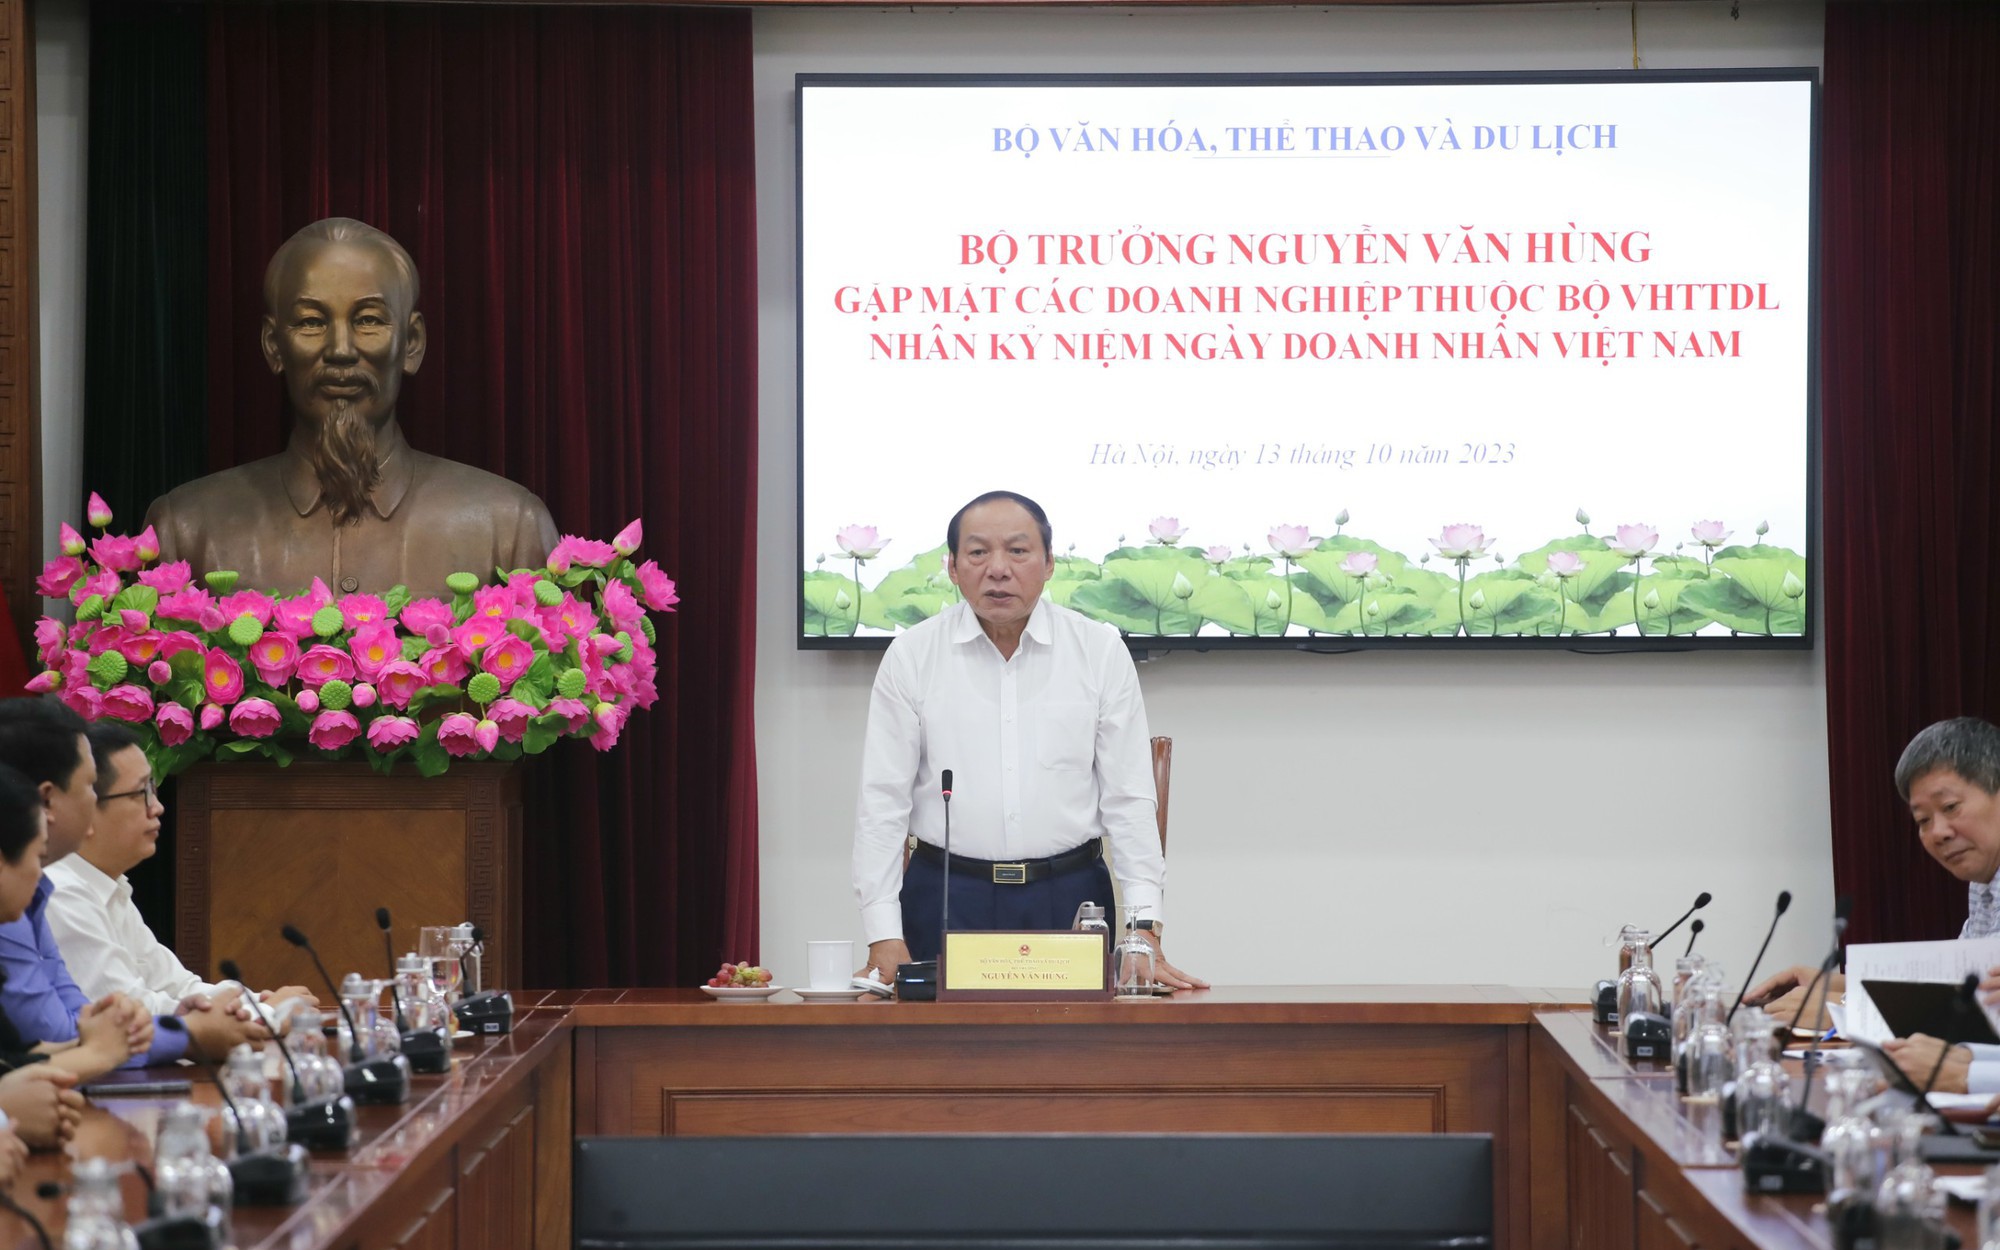 Bộ trưởng Nguyễn Văn Hùng: Doanh nghiệp thuộc Bộ VHTTDL phải có tầm nhìn, tư duy mới để kiến tạo và phát triển